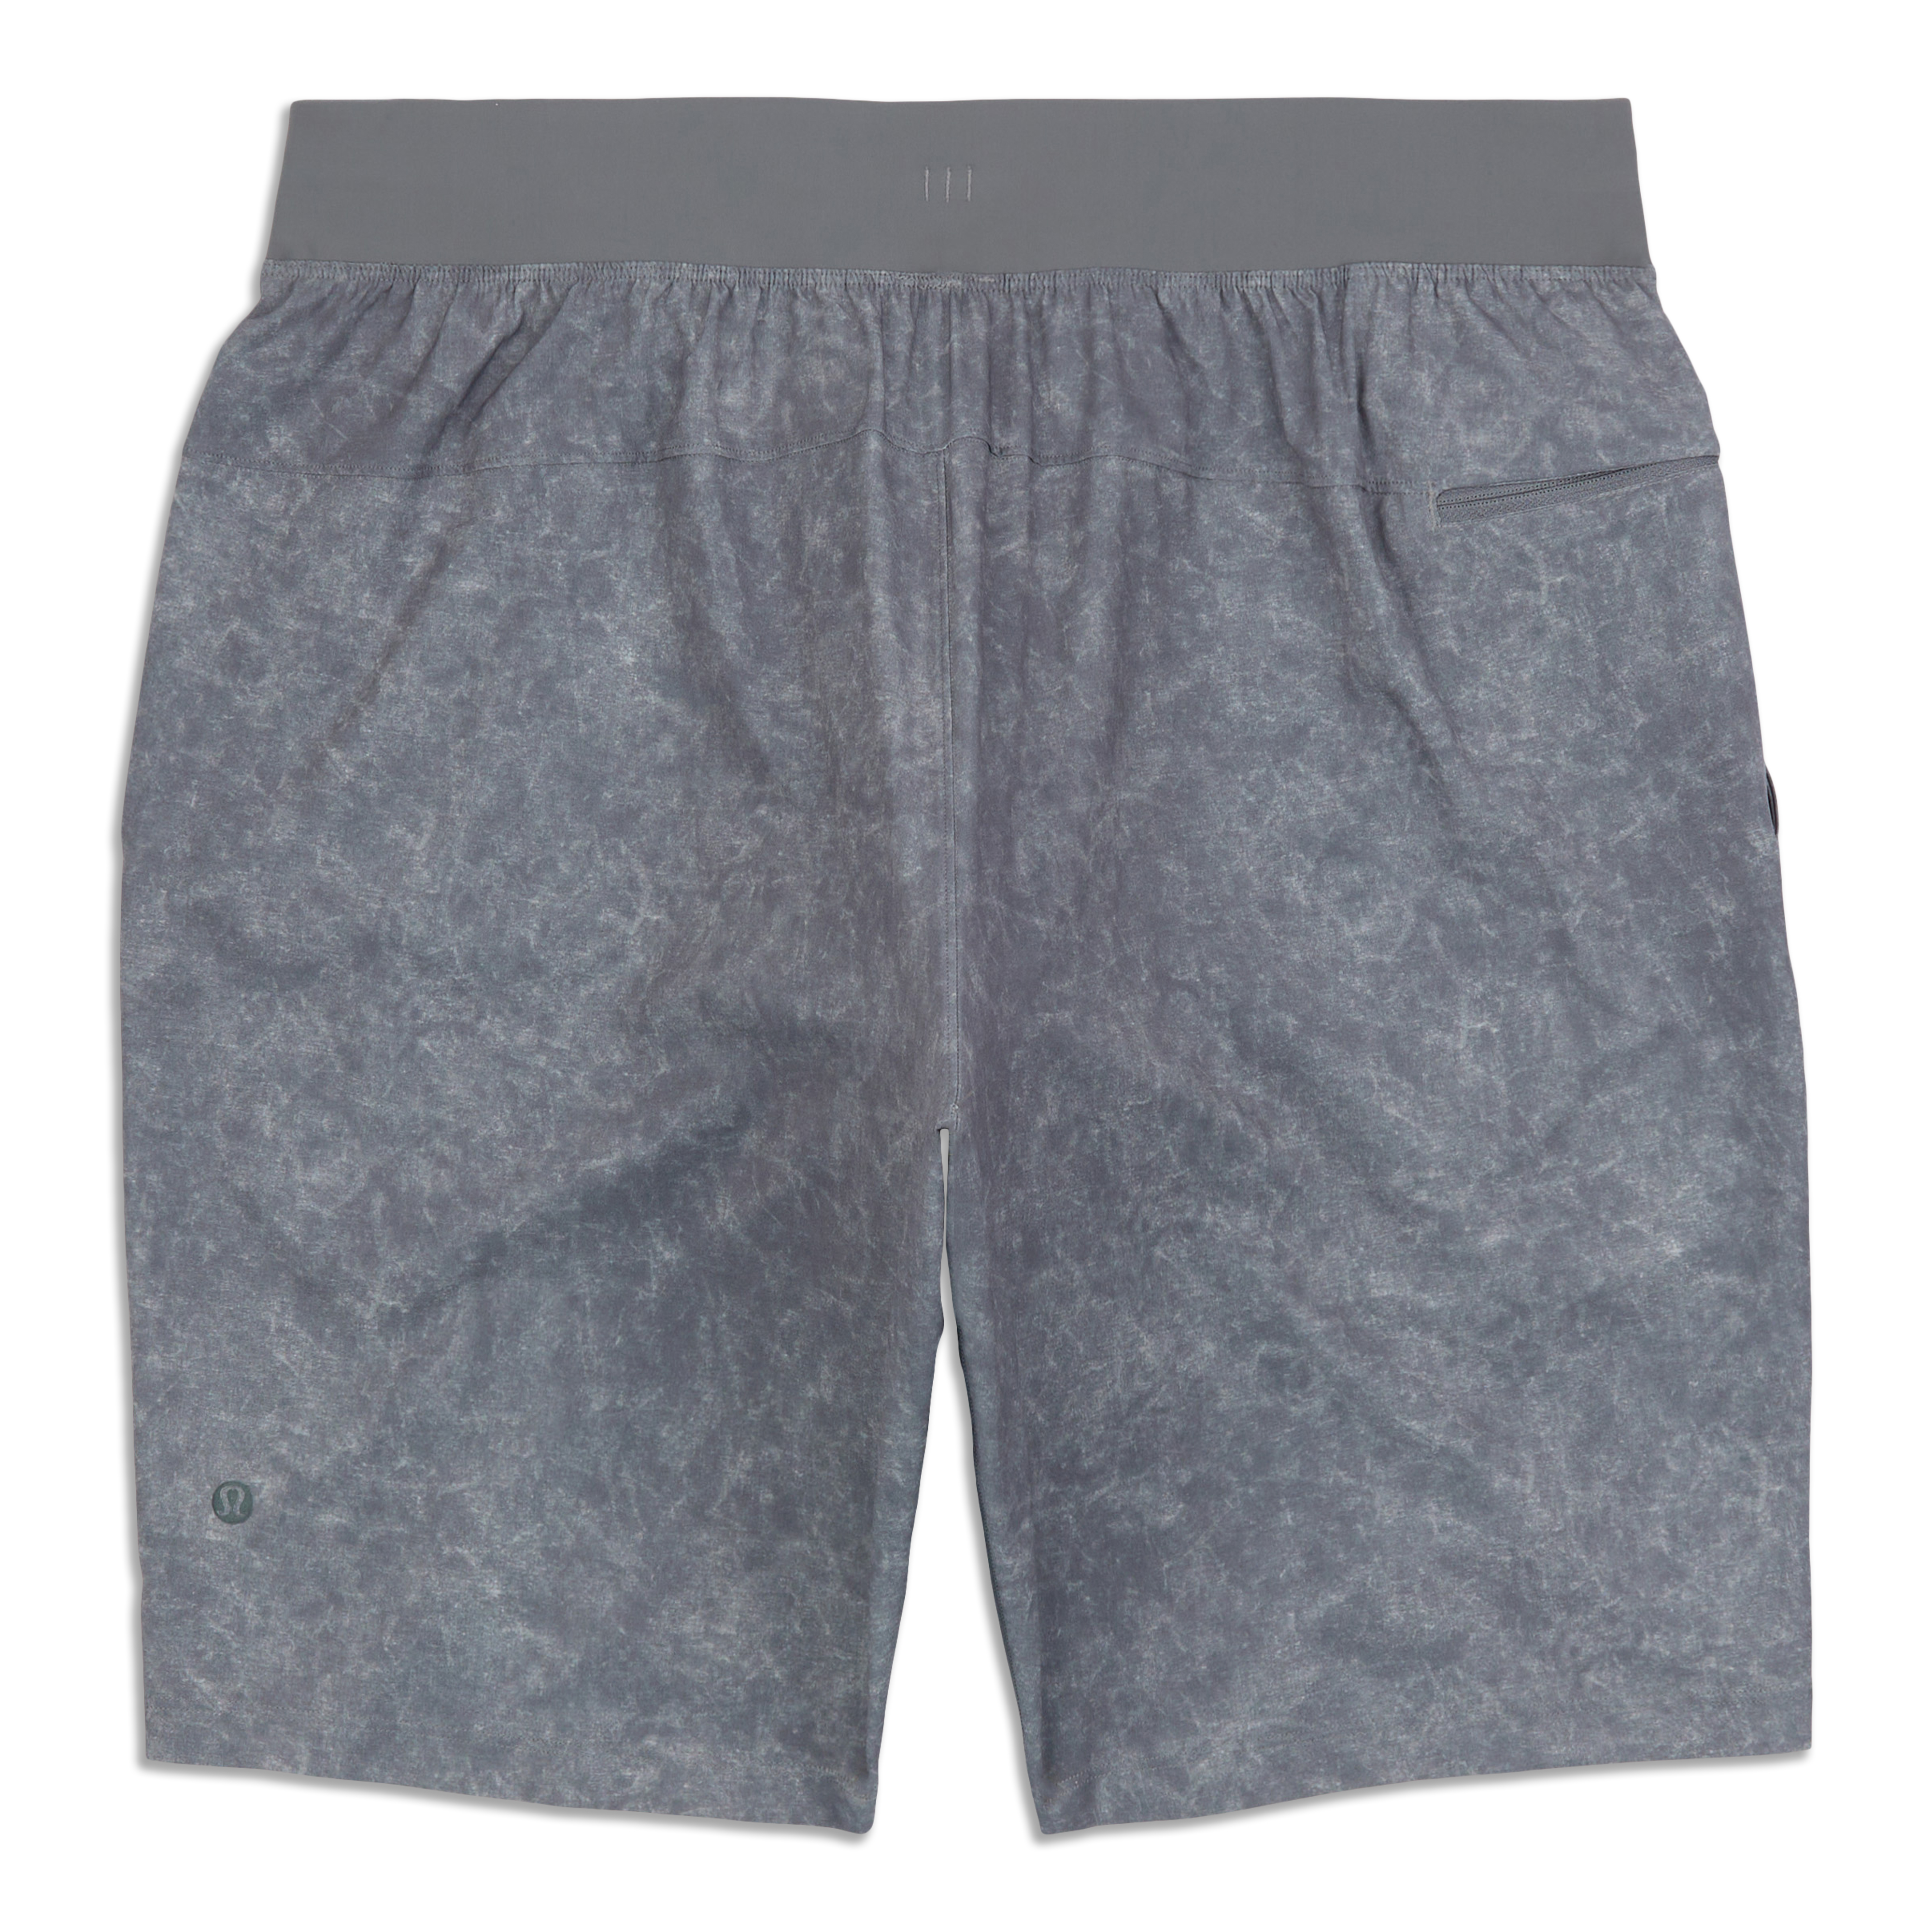 Style Encore - Jonesboro, AR - These Lululemon shorts would make a